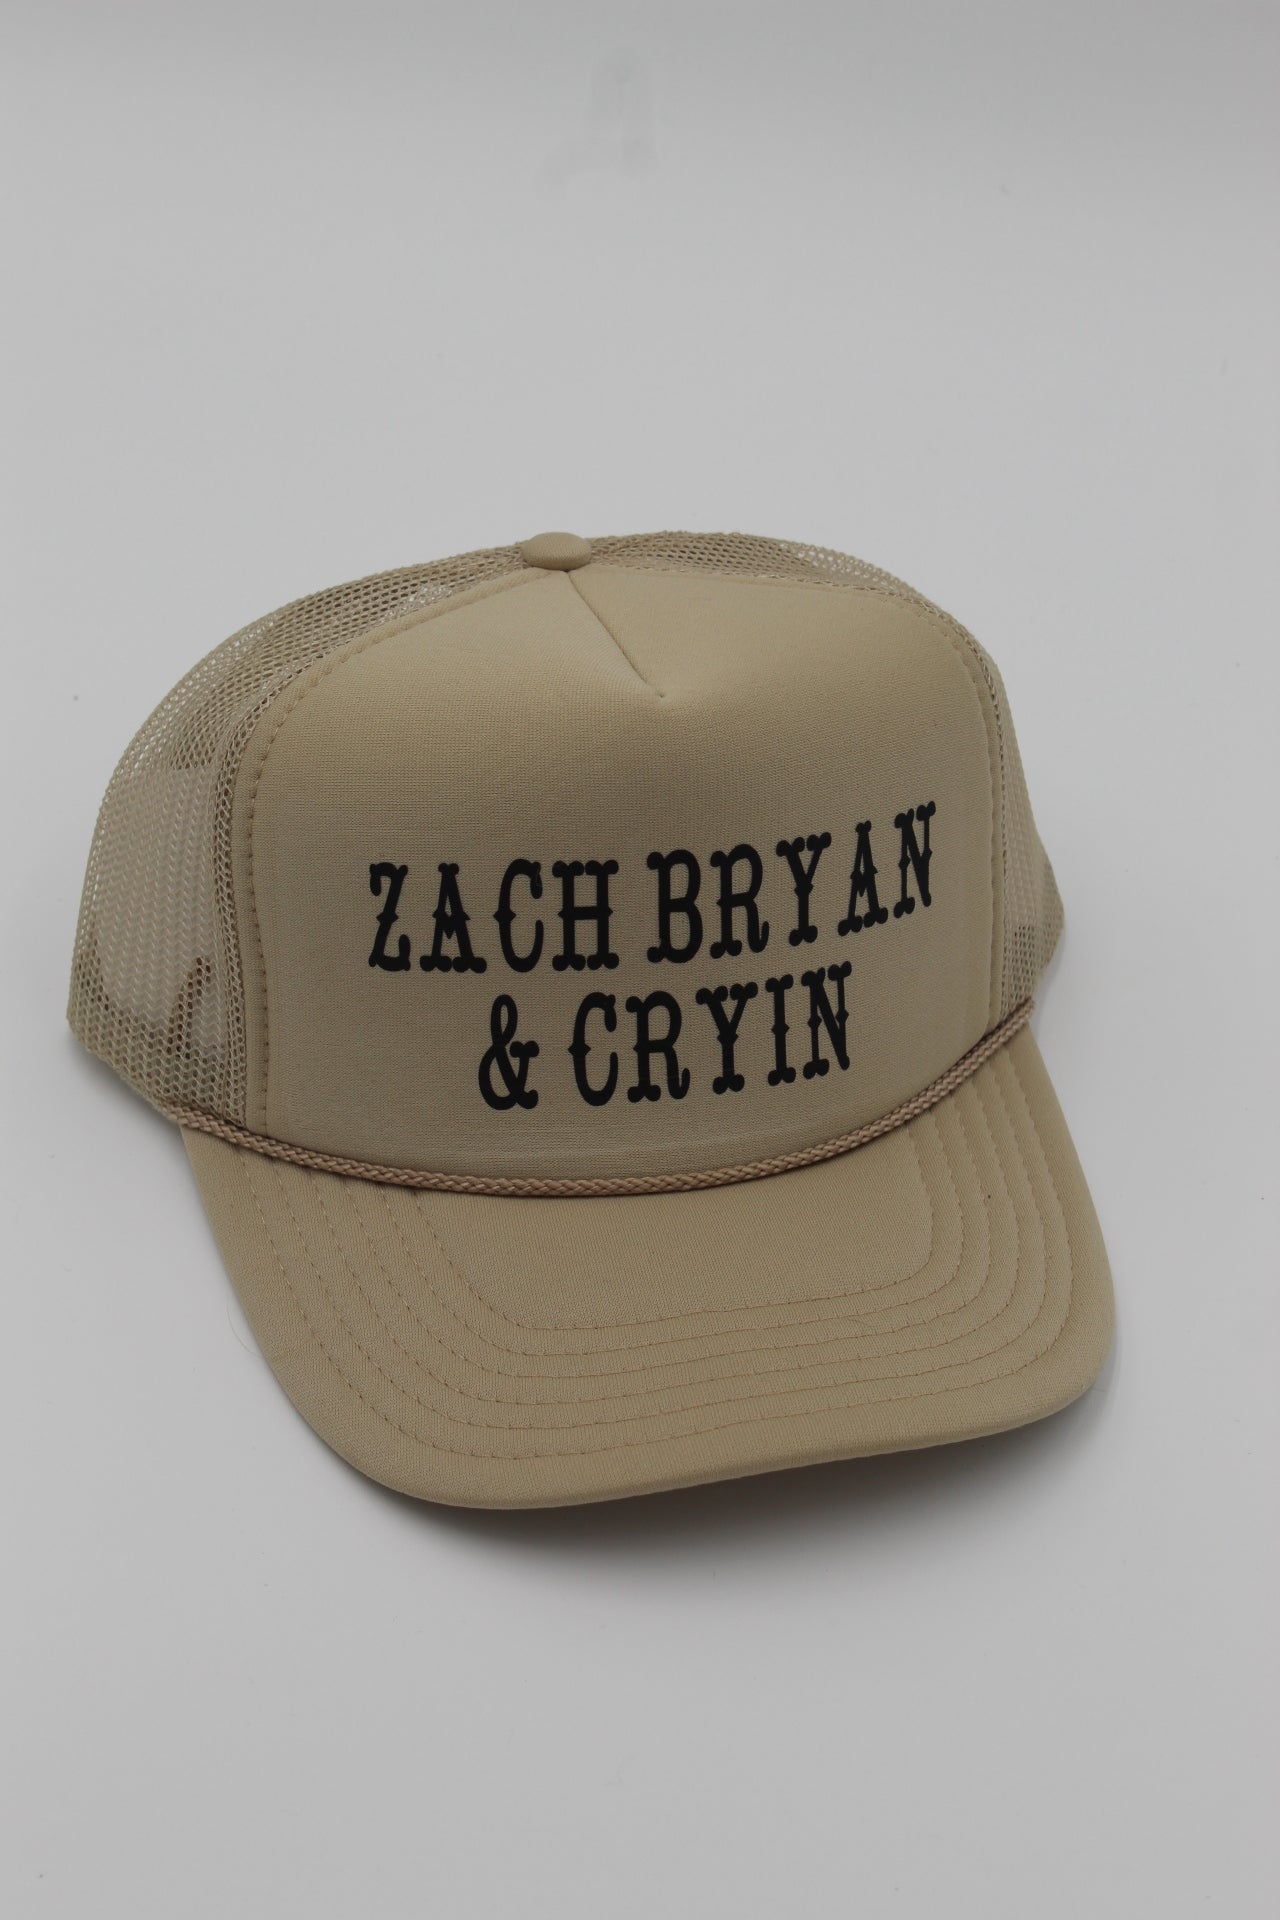 Zach Bryan & Cryin Trucker Hat